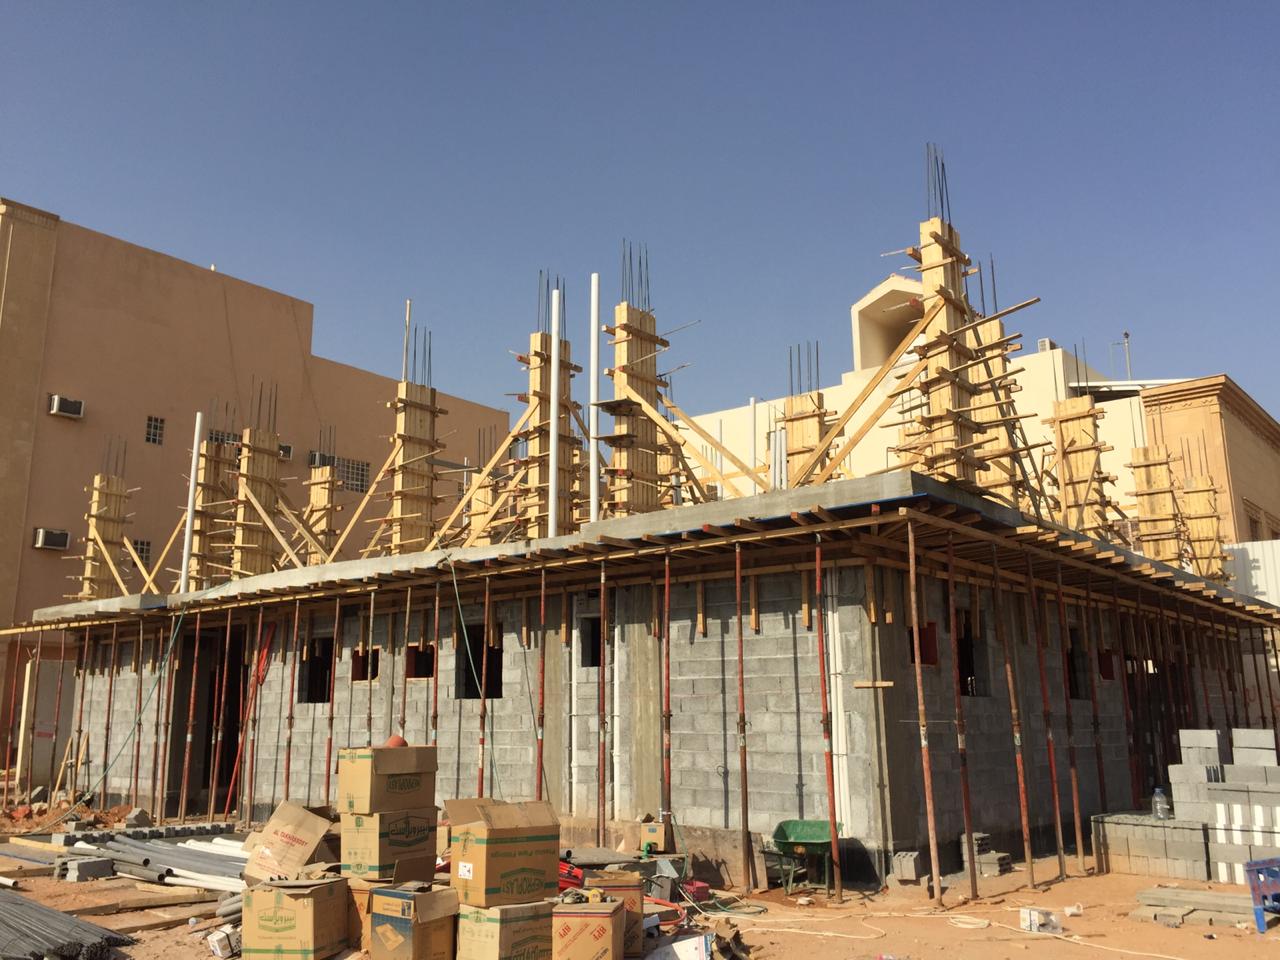 مقاول بناء ملاحق في الرياض 0533266762  مقاول عظم اسود بالرياض، P_1695kcjkn2